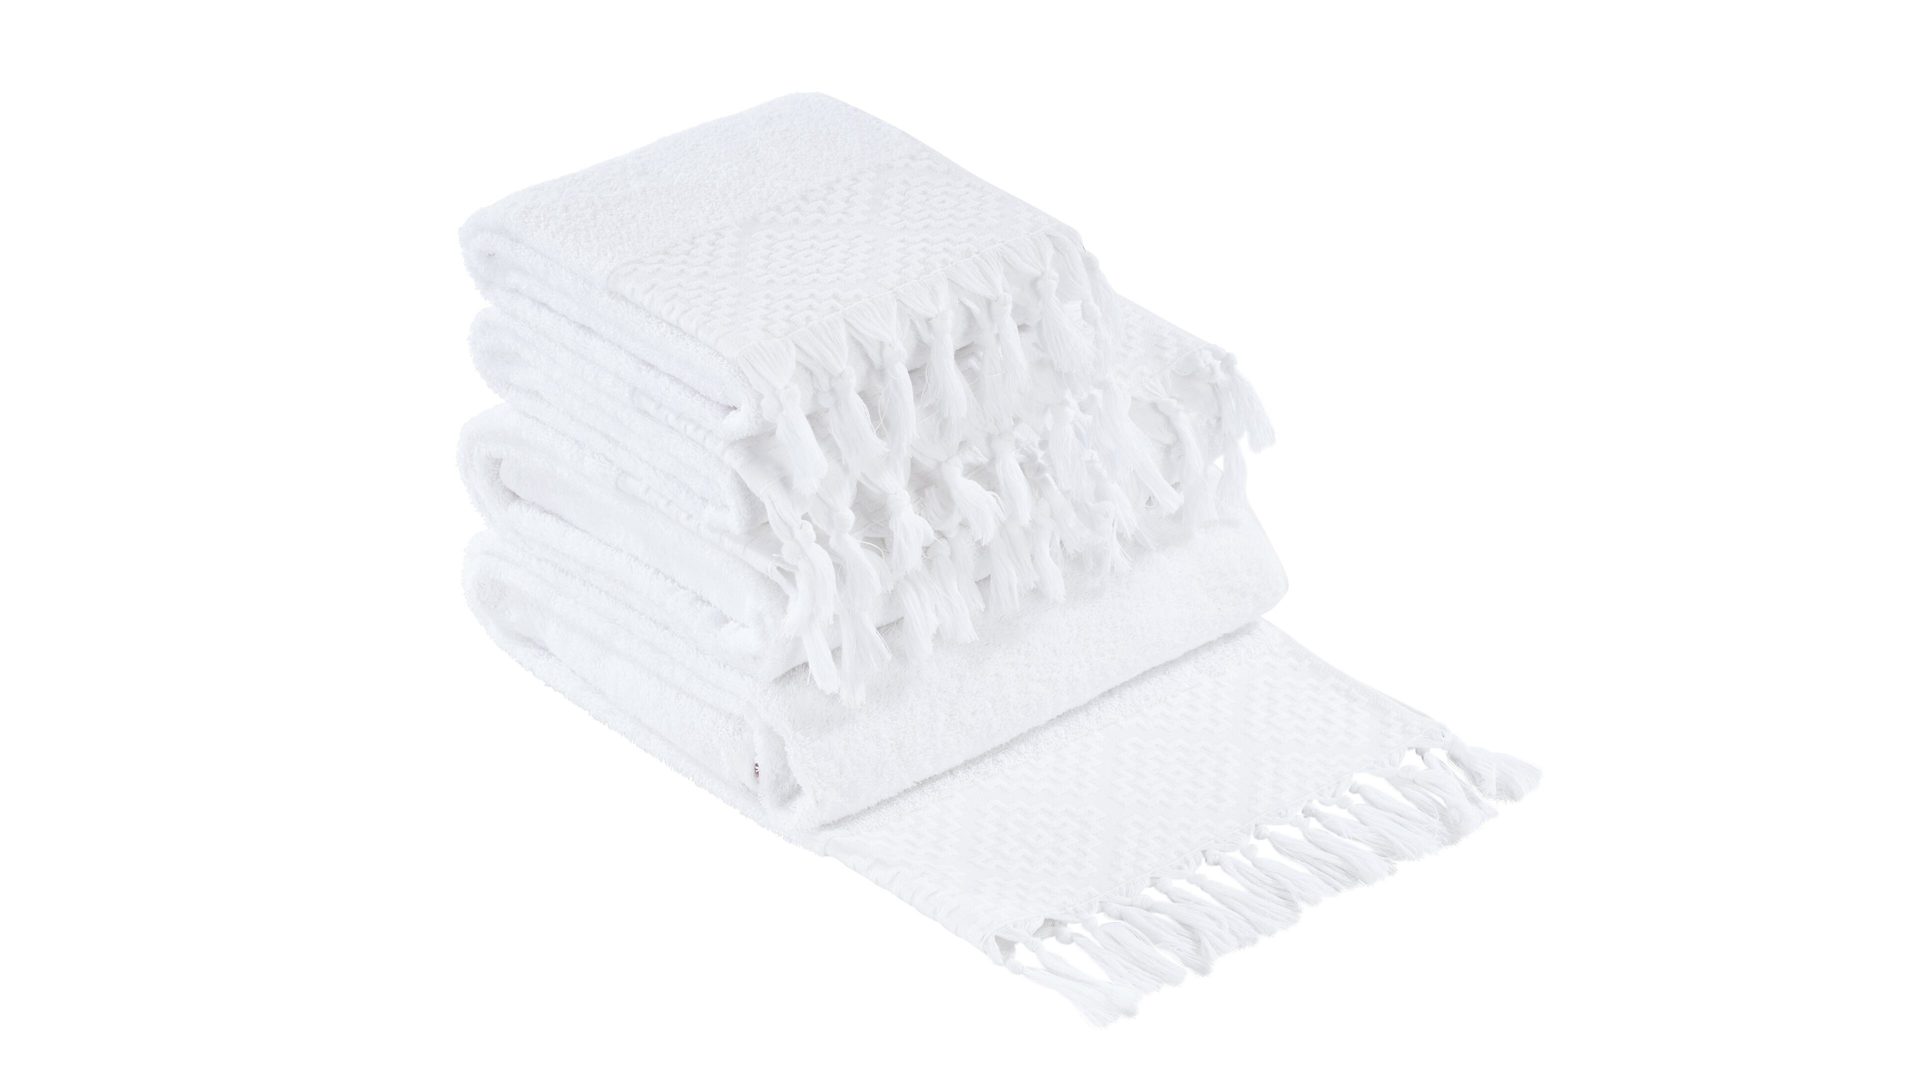 Handtuch-Set Done® by karabel home company aus Stoff in Weiß DONE® Handtuch-Set Provence Boheme - Heimtextilien weiße Baumwolle  – vierteilig